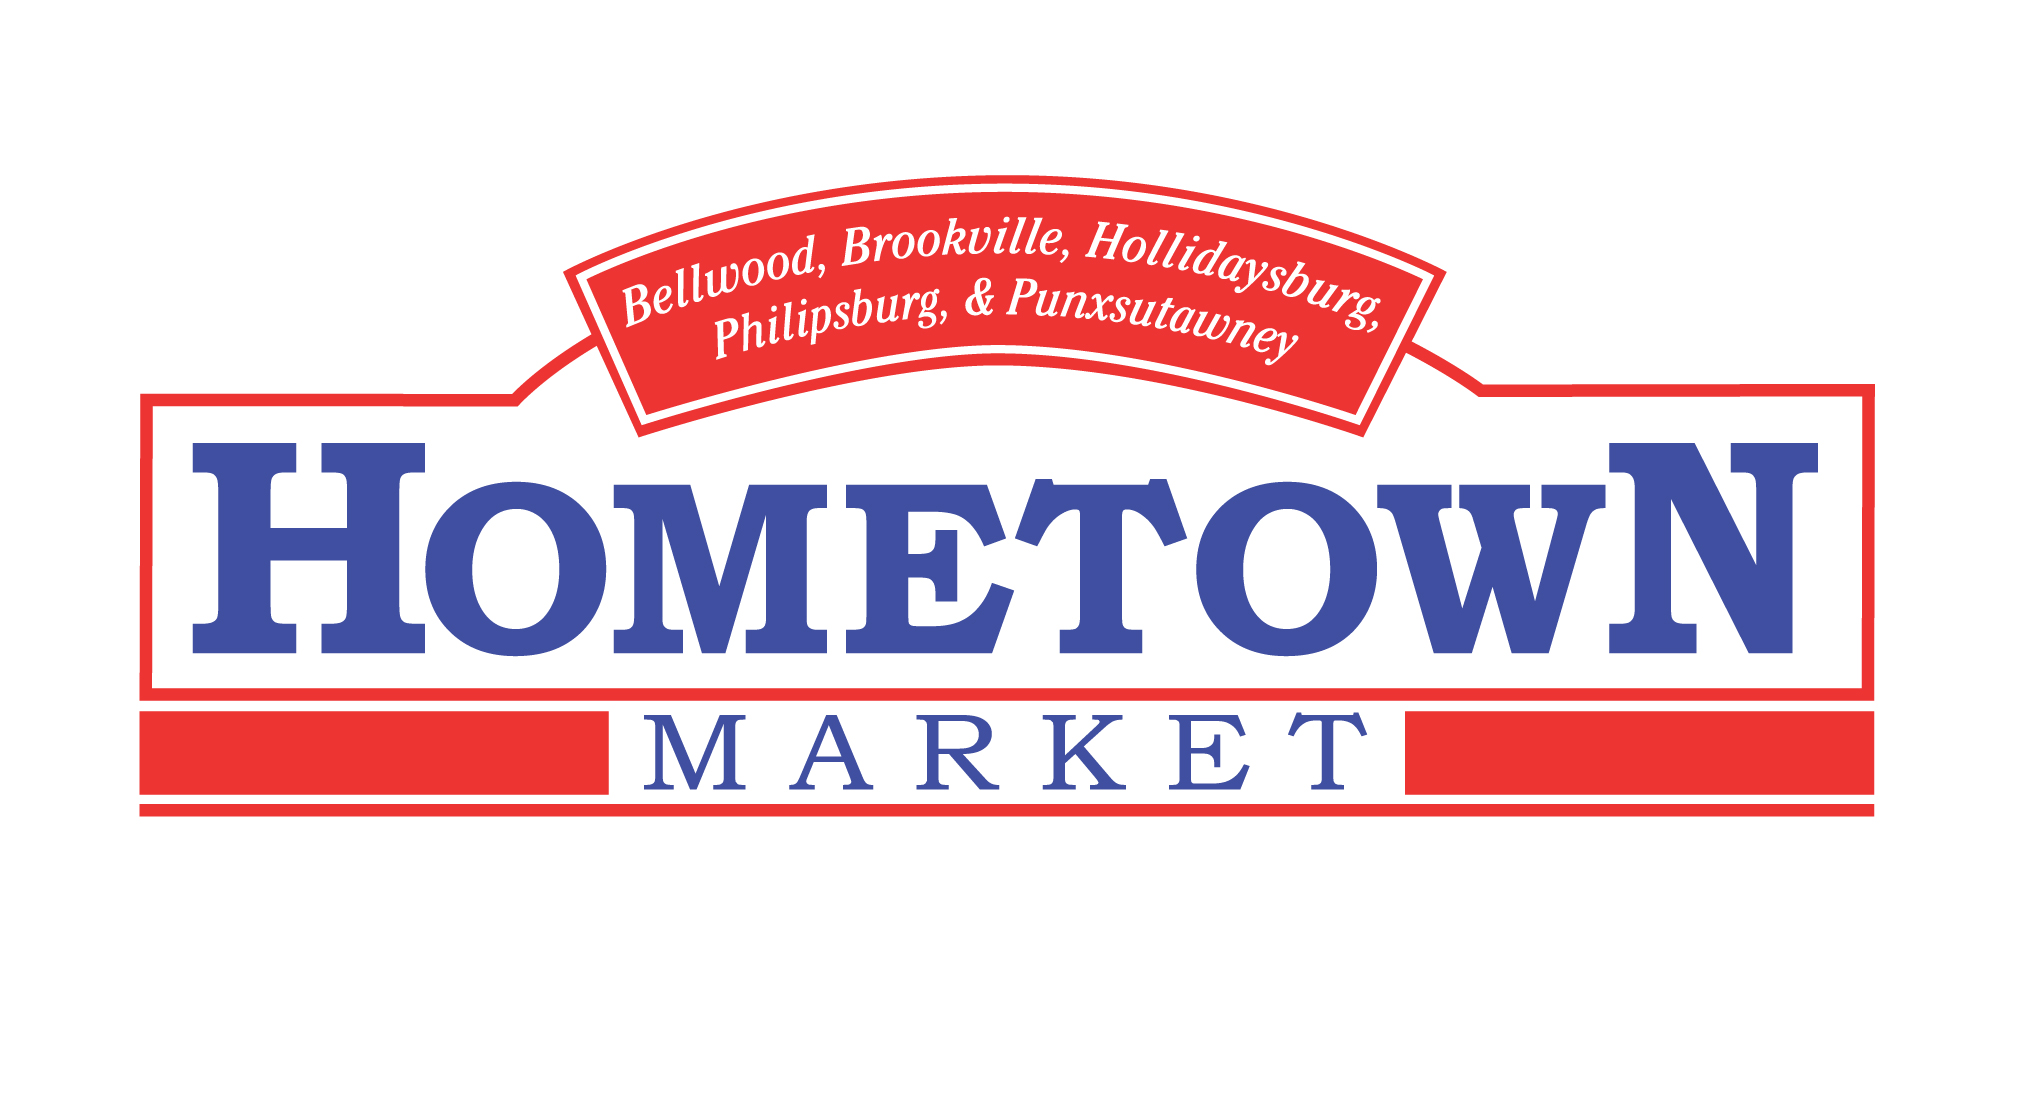 A theme logo of Hometown Market